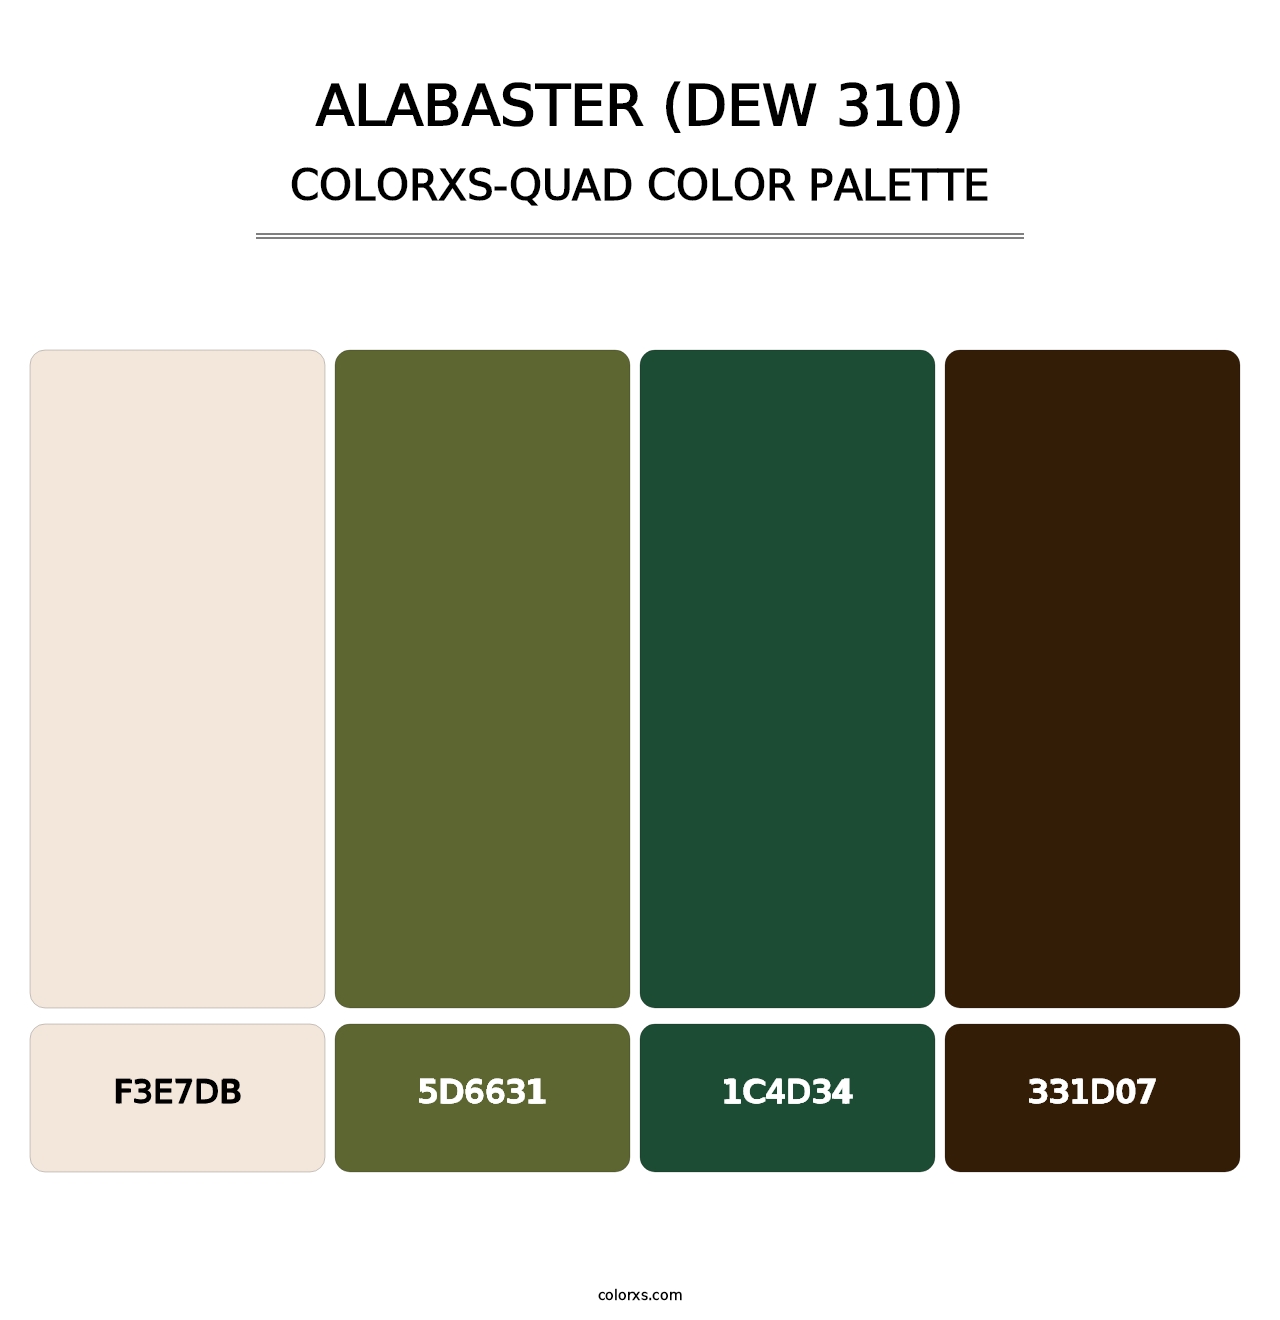 Alabaster (DEW 310) - Colorxs Quad Palette